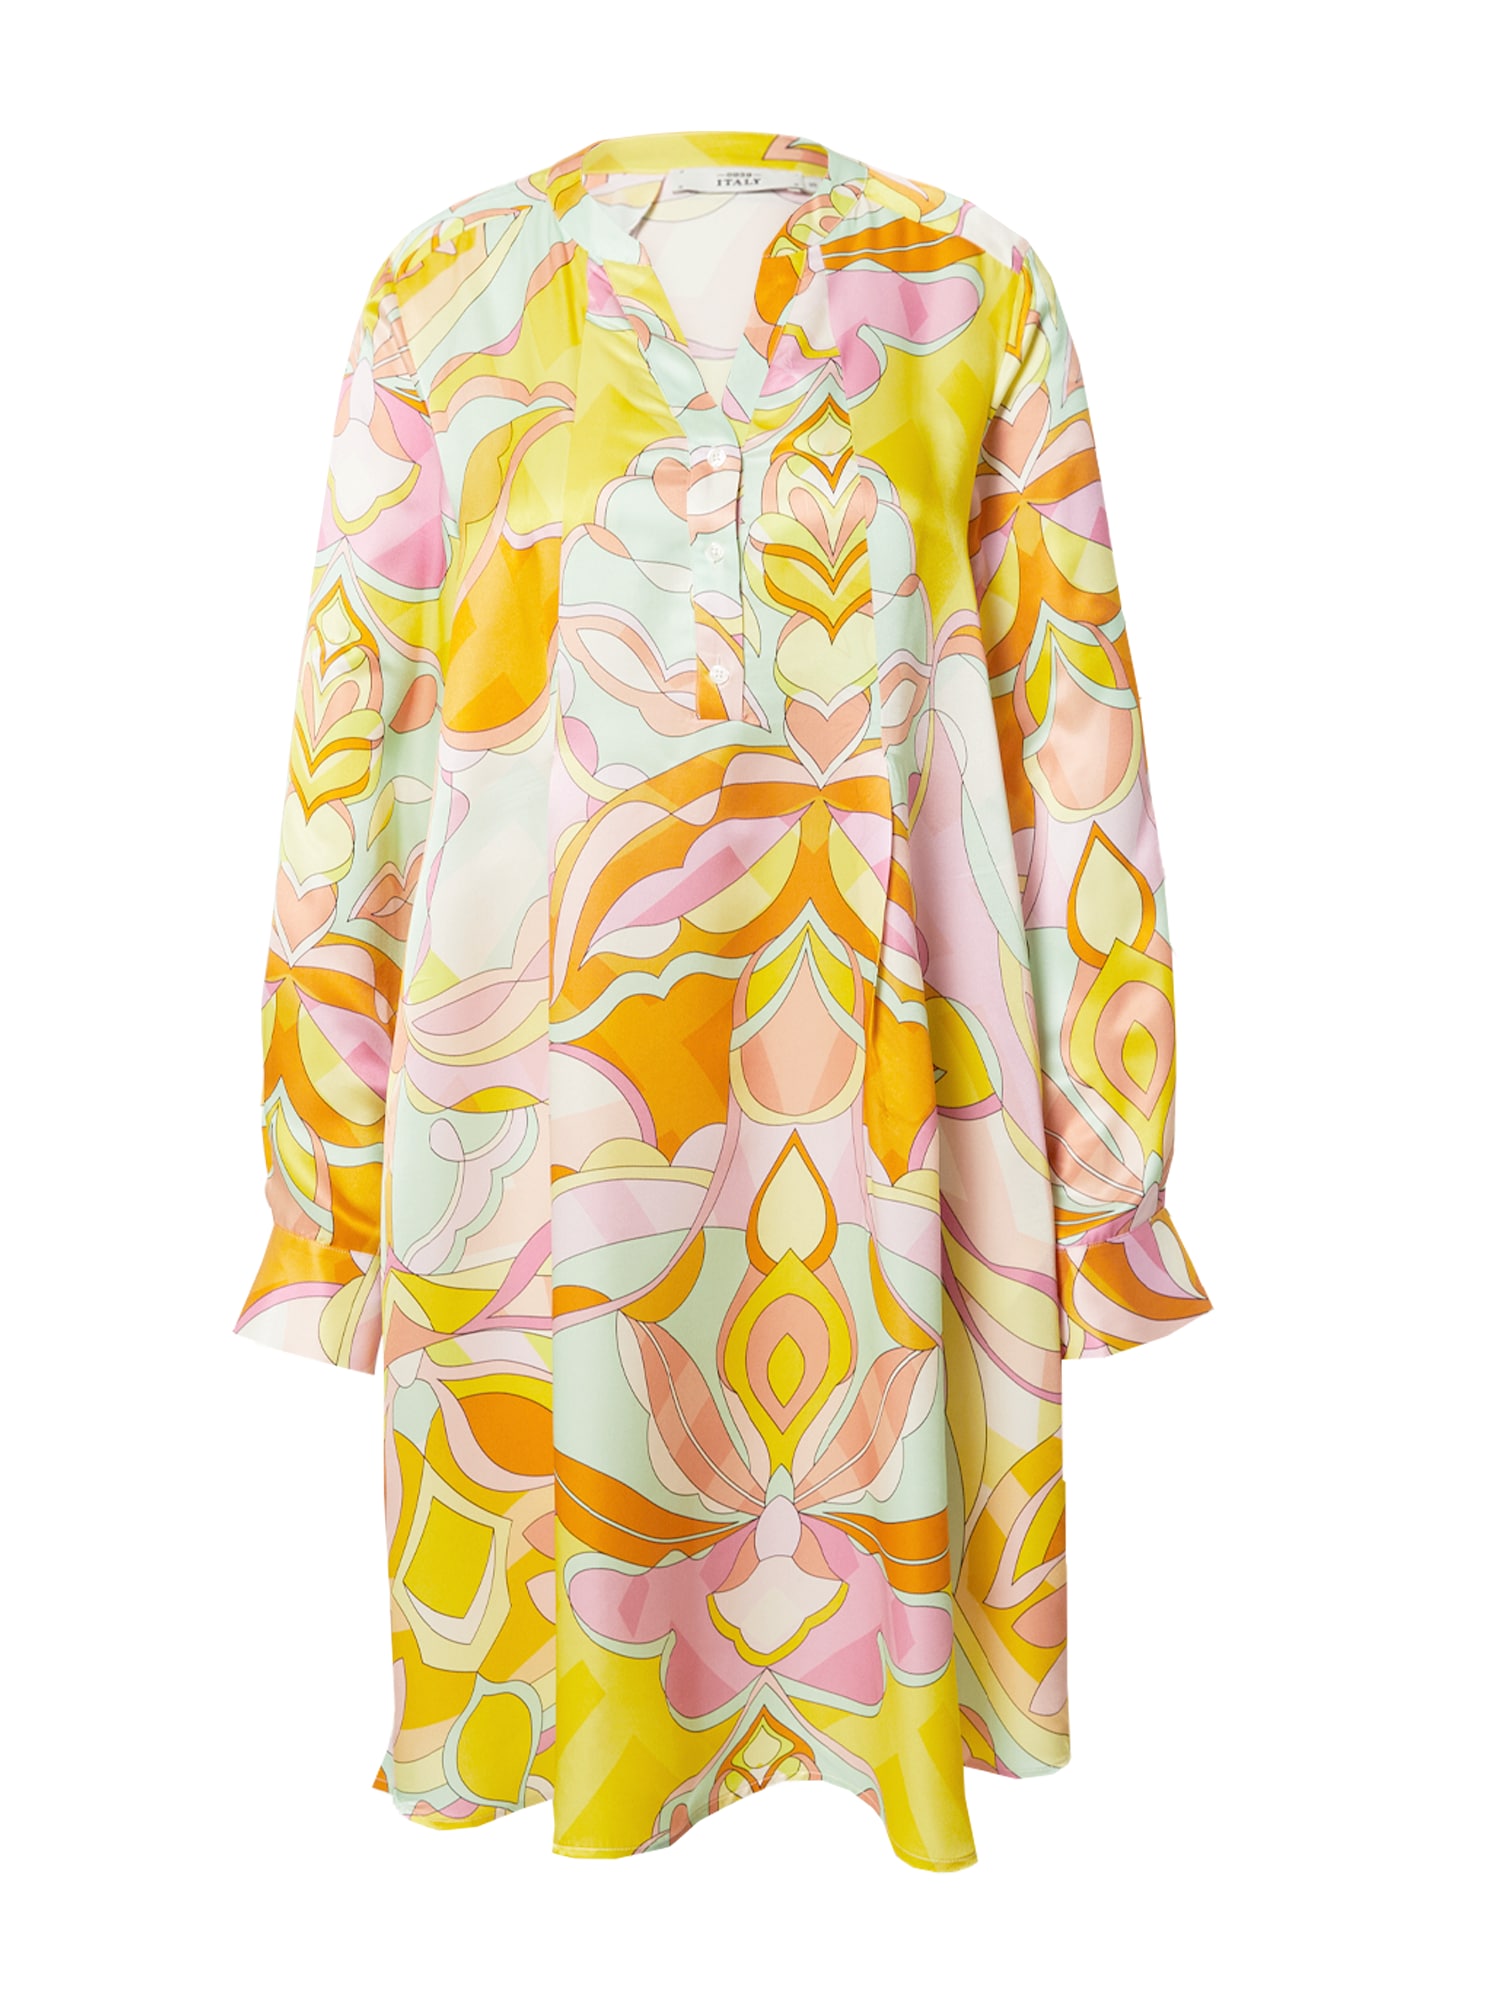 0039 Italy Suknelė 'Ester New' geltona / mėtų spalva / oranžinė / rožių spalva